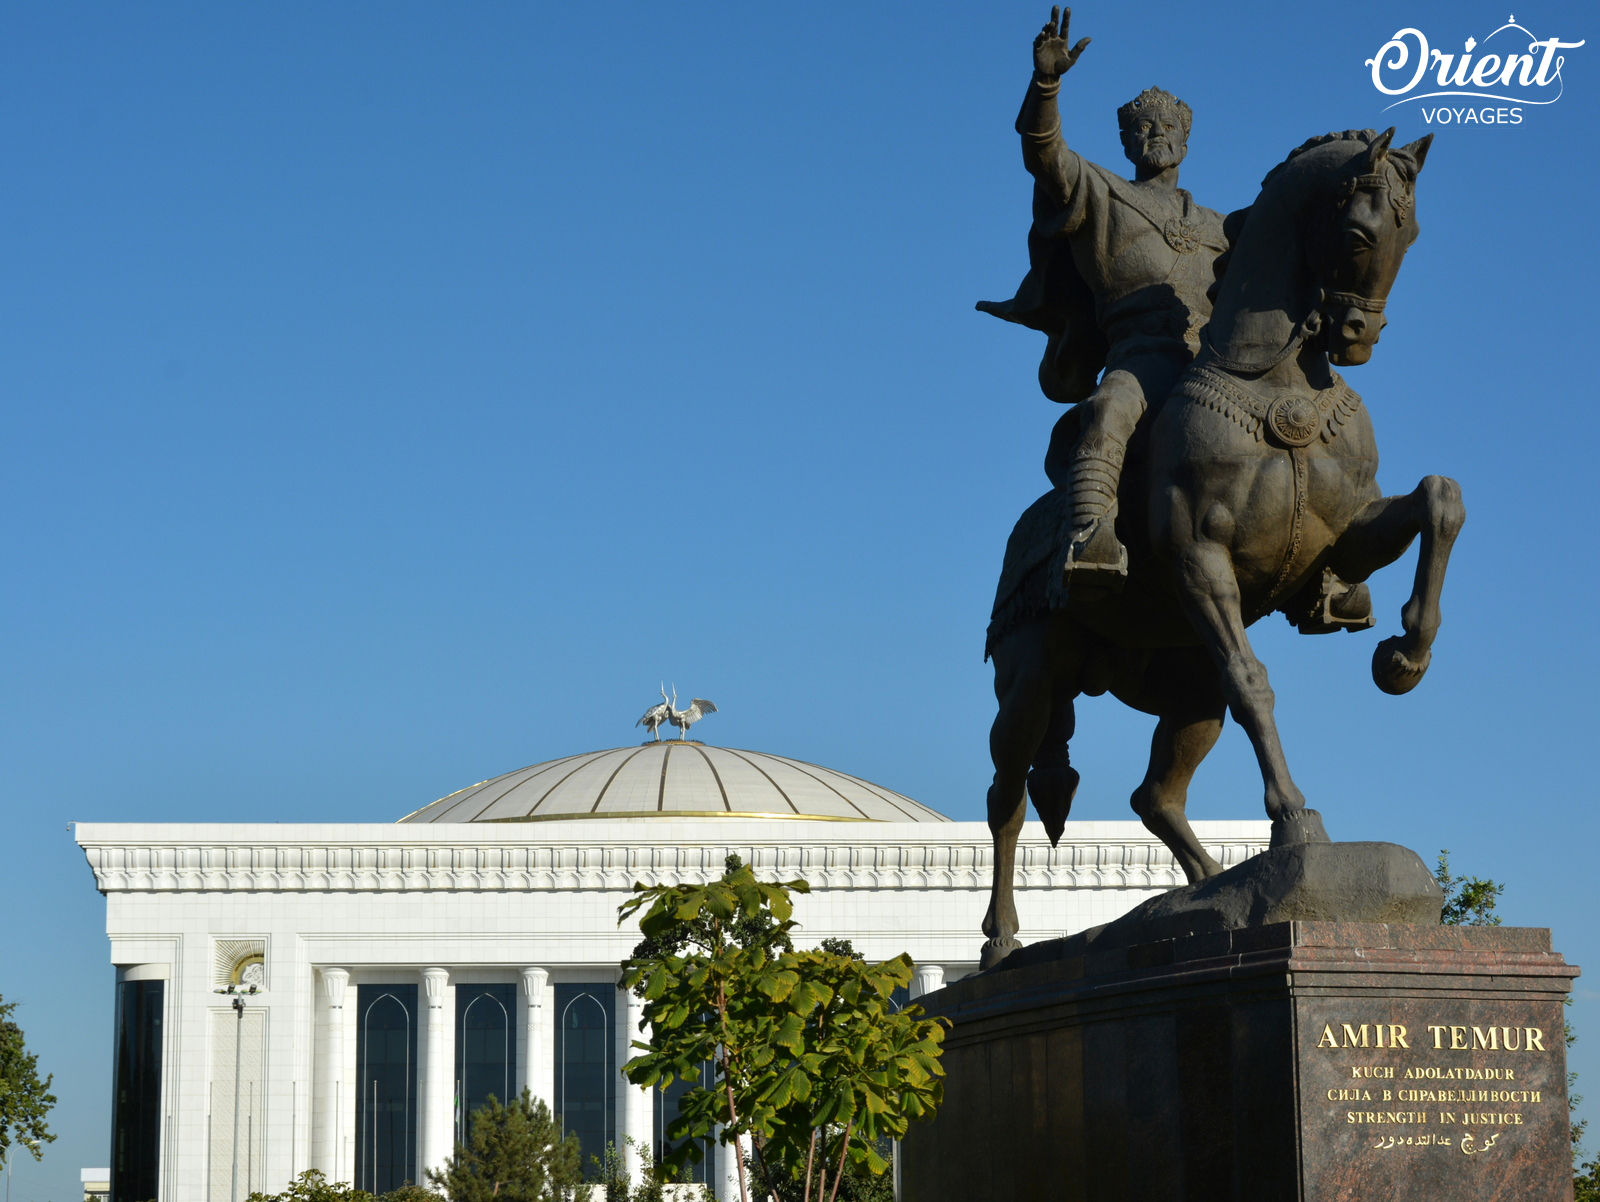 Amir Temur monument, Tashkent